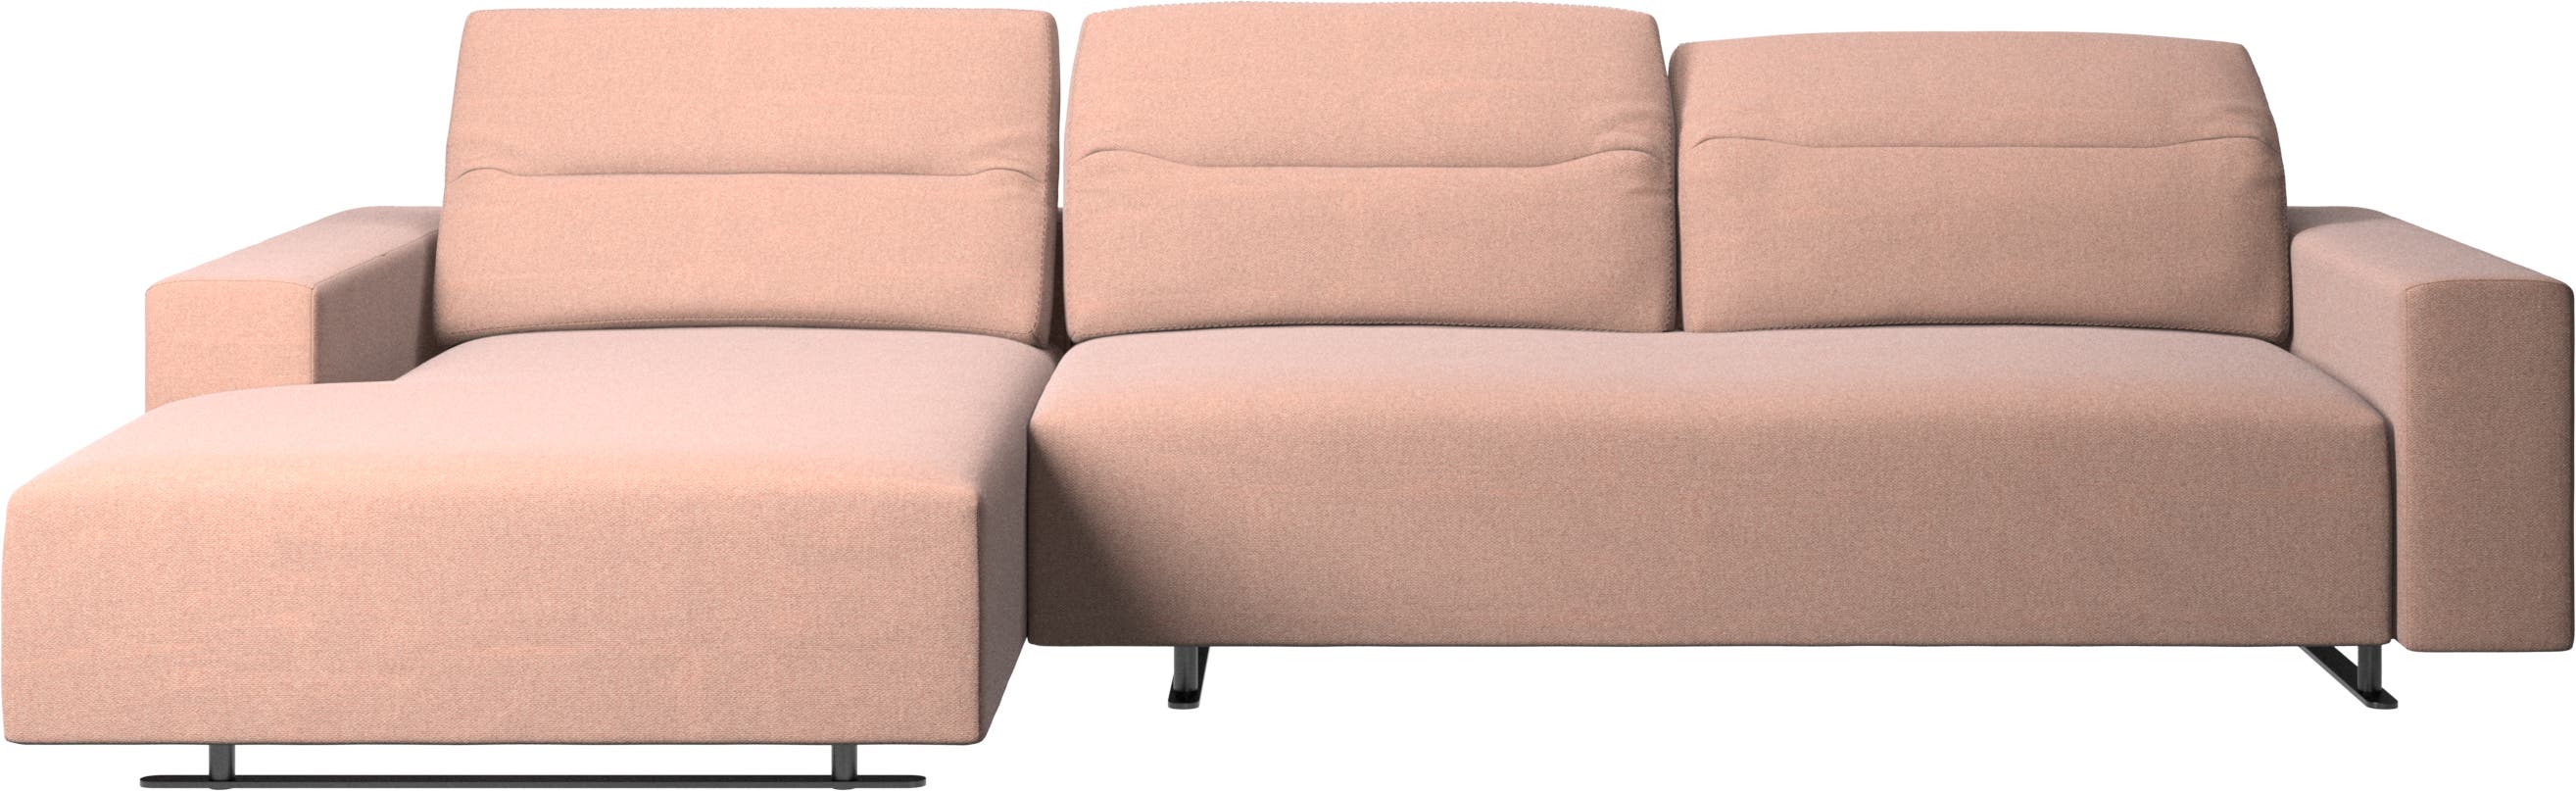 Canapé Hampton avec dossier ajustable, méridienne et espace de rangement côté gauche